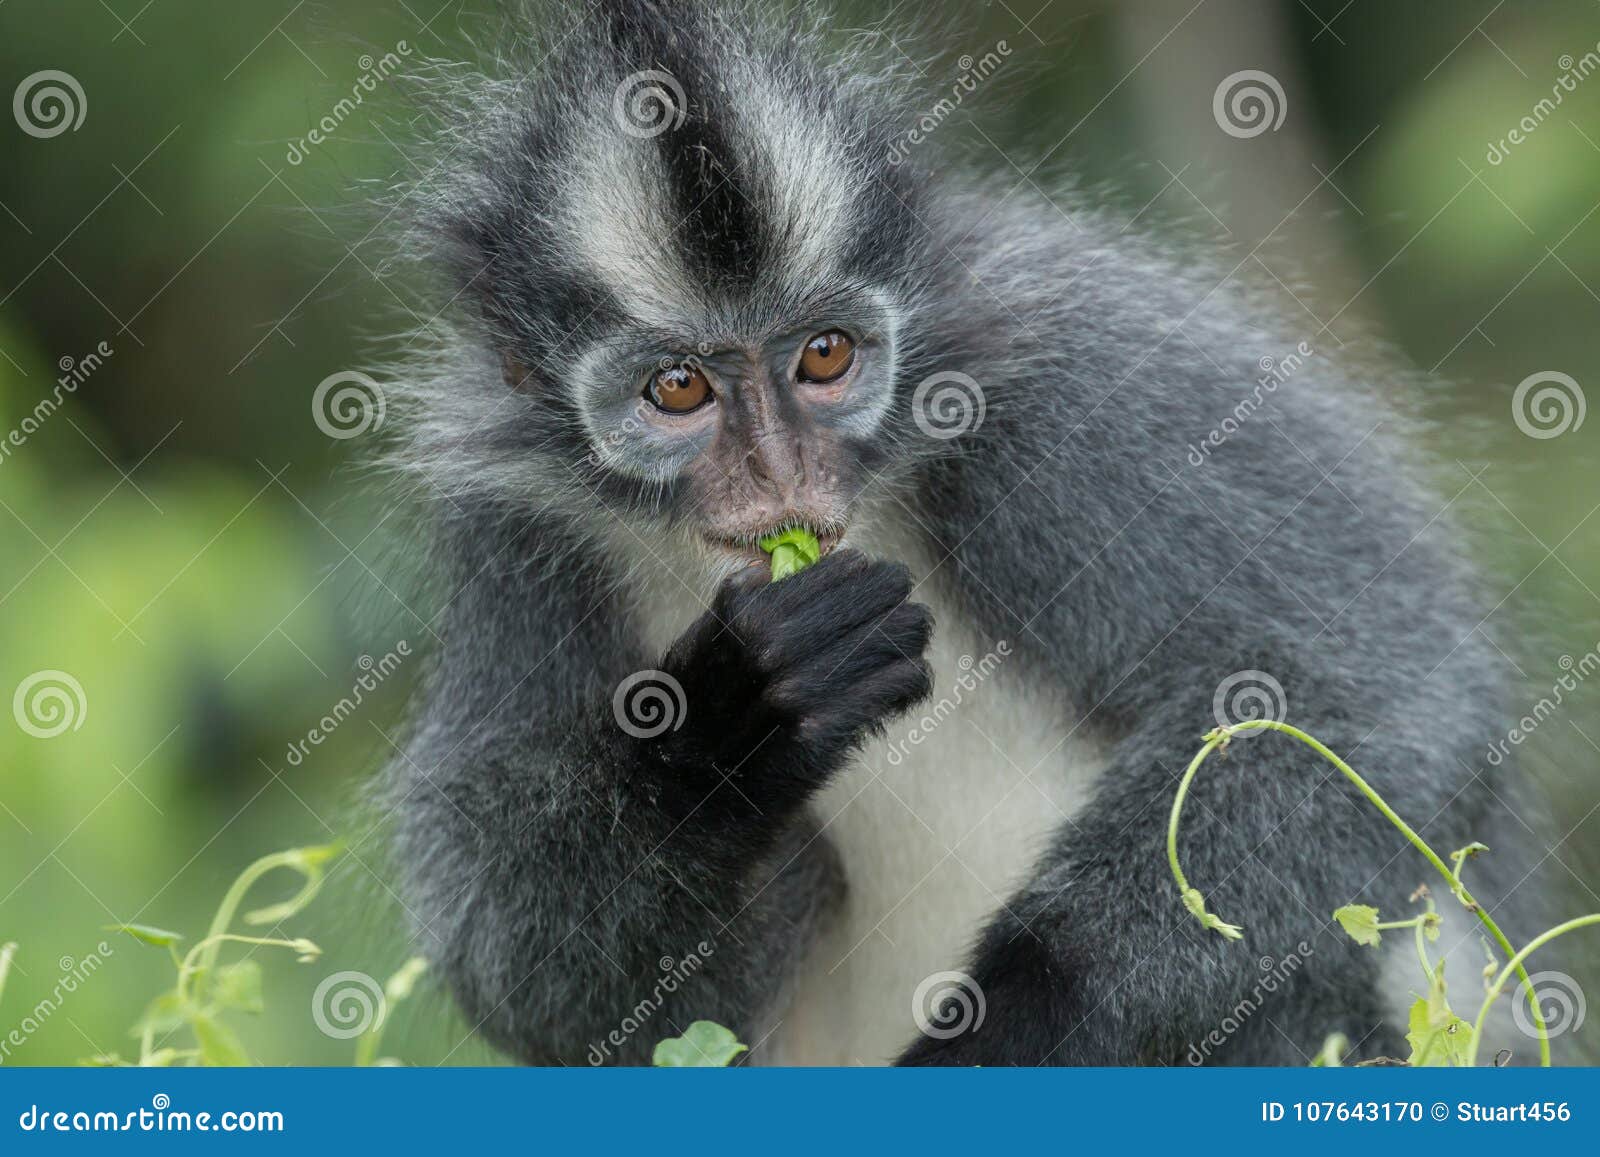 thomas` langur presbytis thomasi, also known as the thomas leaf monkey, in gunung leuser national park, sumatra, indonesia